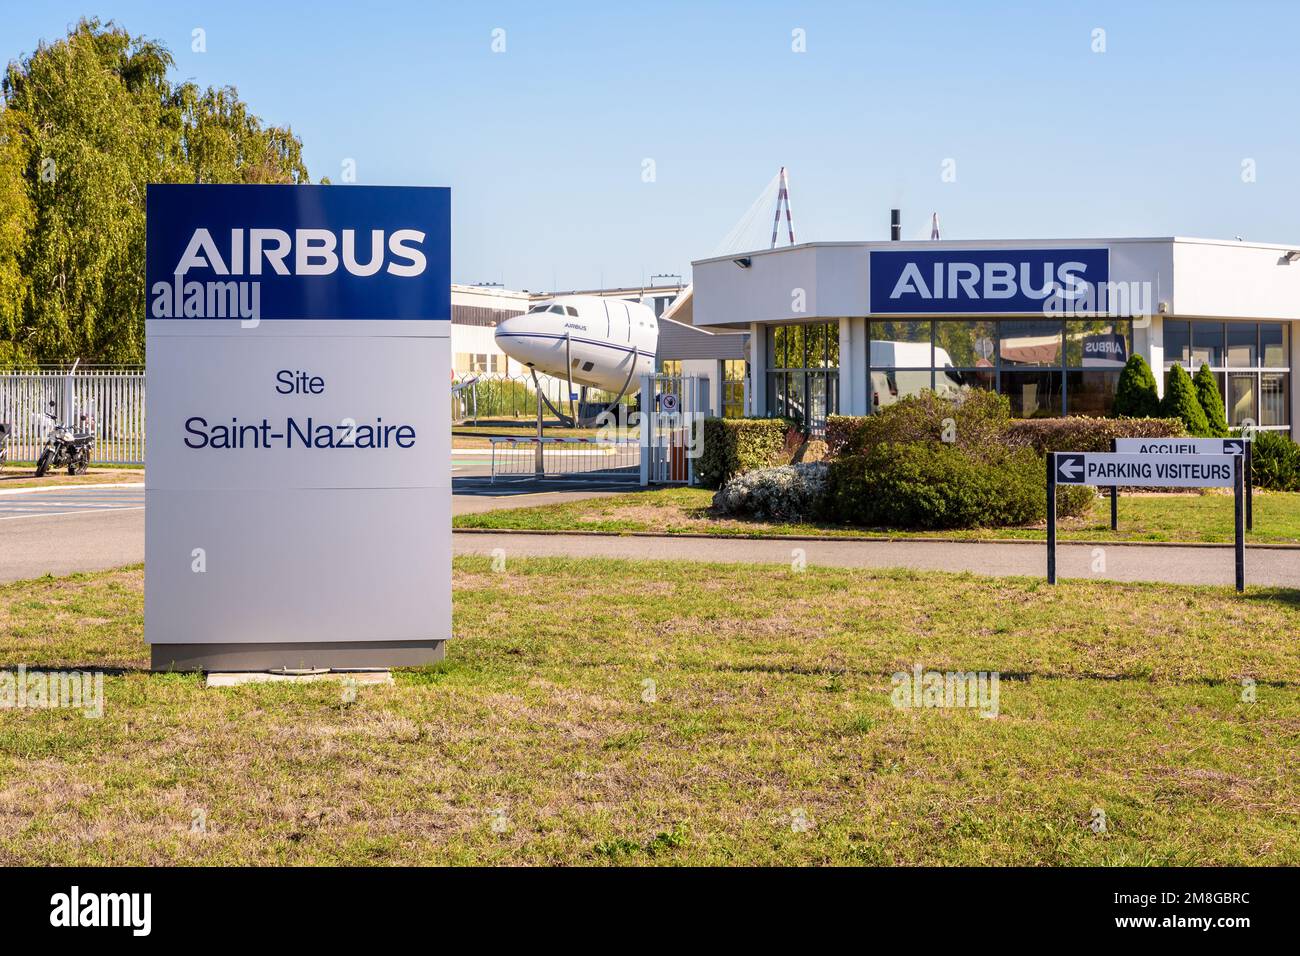 Ingresso del sito di Airbus Atlantic a Saint-Nazaire, Francia, derivante dalla fusione tra Stelia Aerospace e le fabbriche di Airbus. Foto Stock